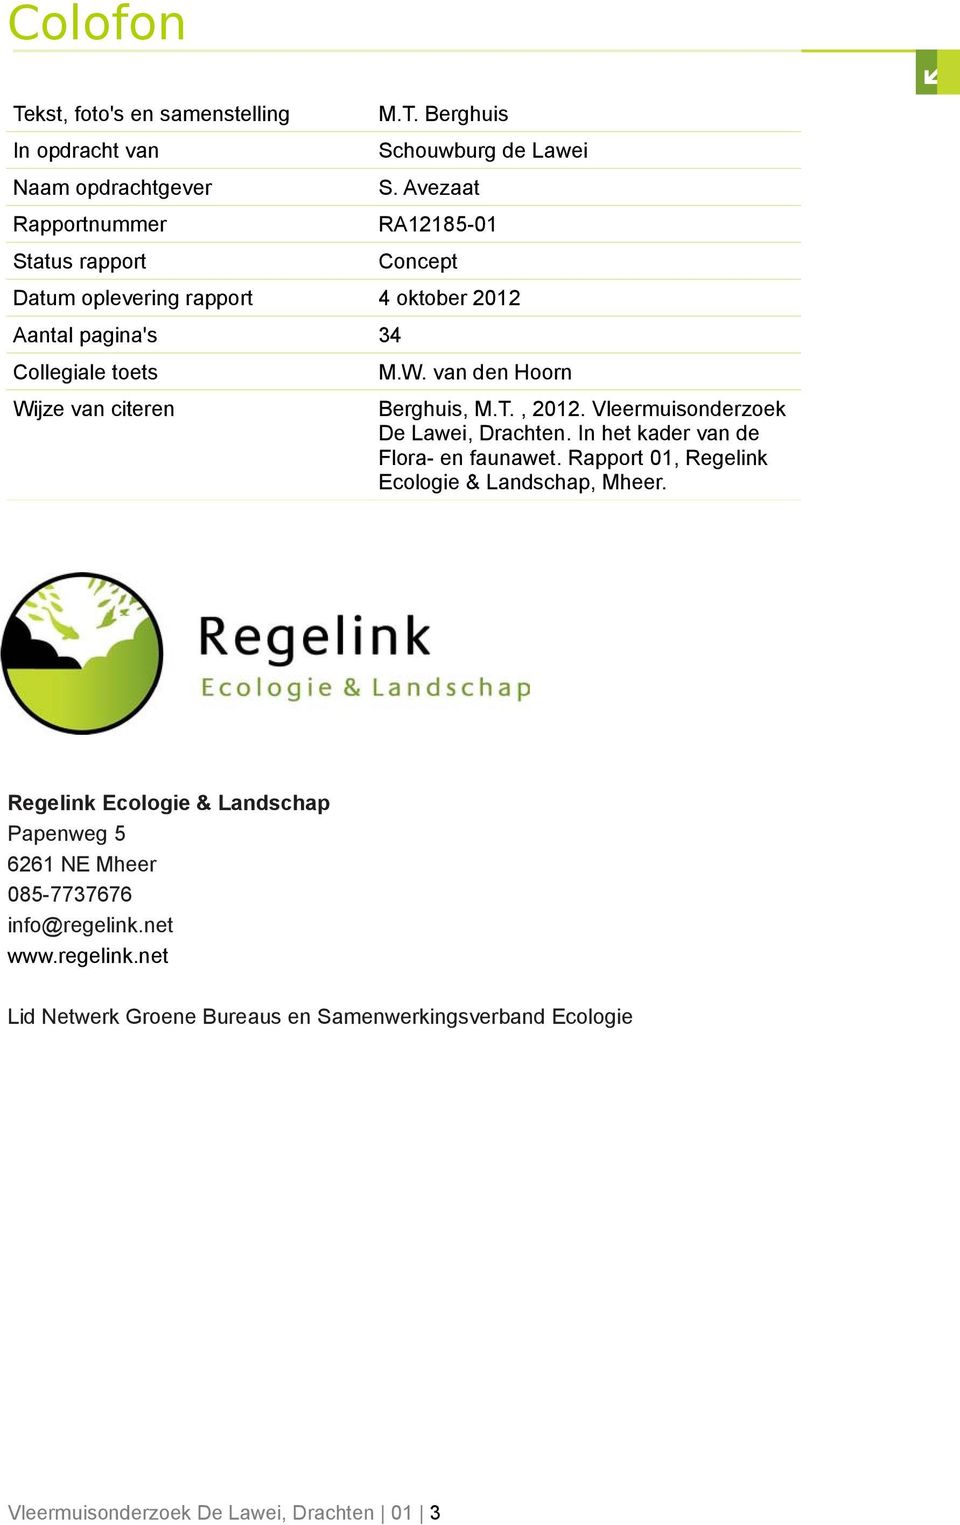 , 2012. Vleermuisonderzoek De Lawei, Drachten. In het kader van de Flora- en faunawet. Rapport 01, Regelink Ecologie & Landschap, Mheer.